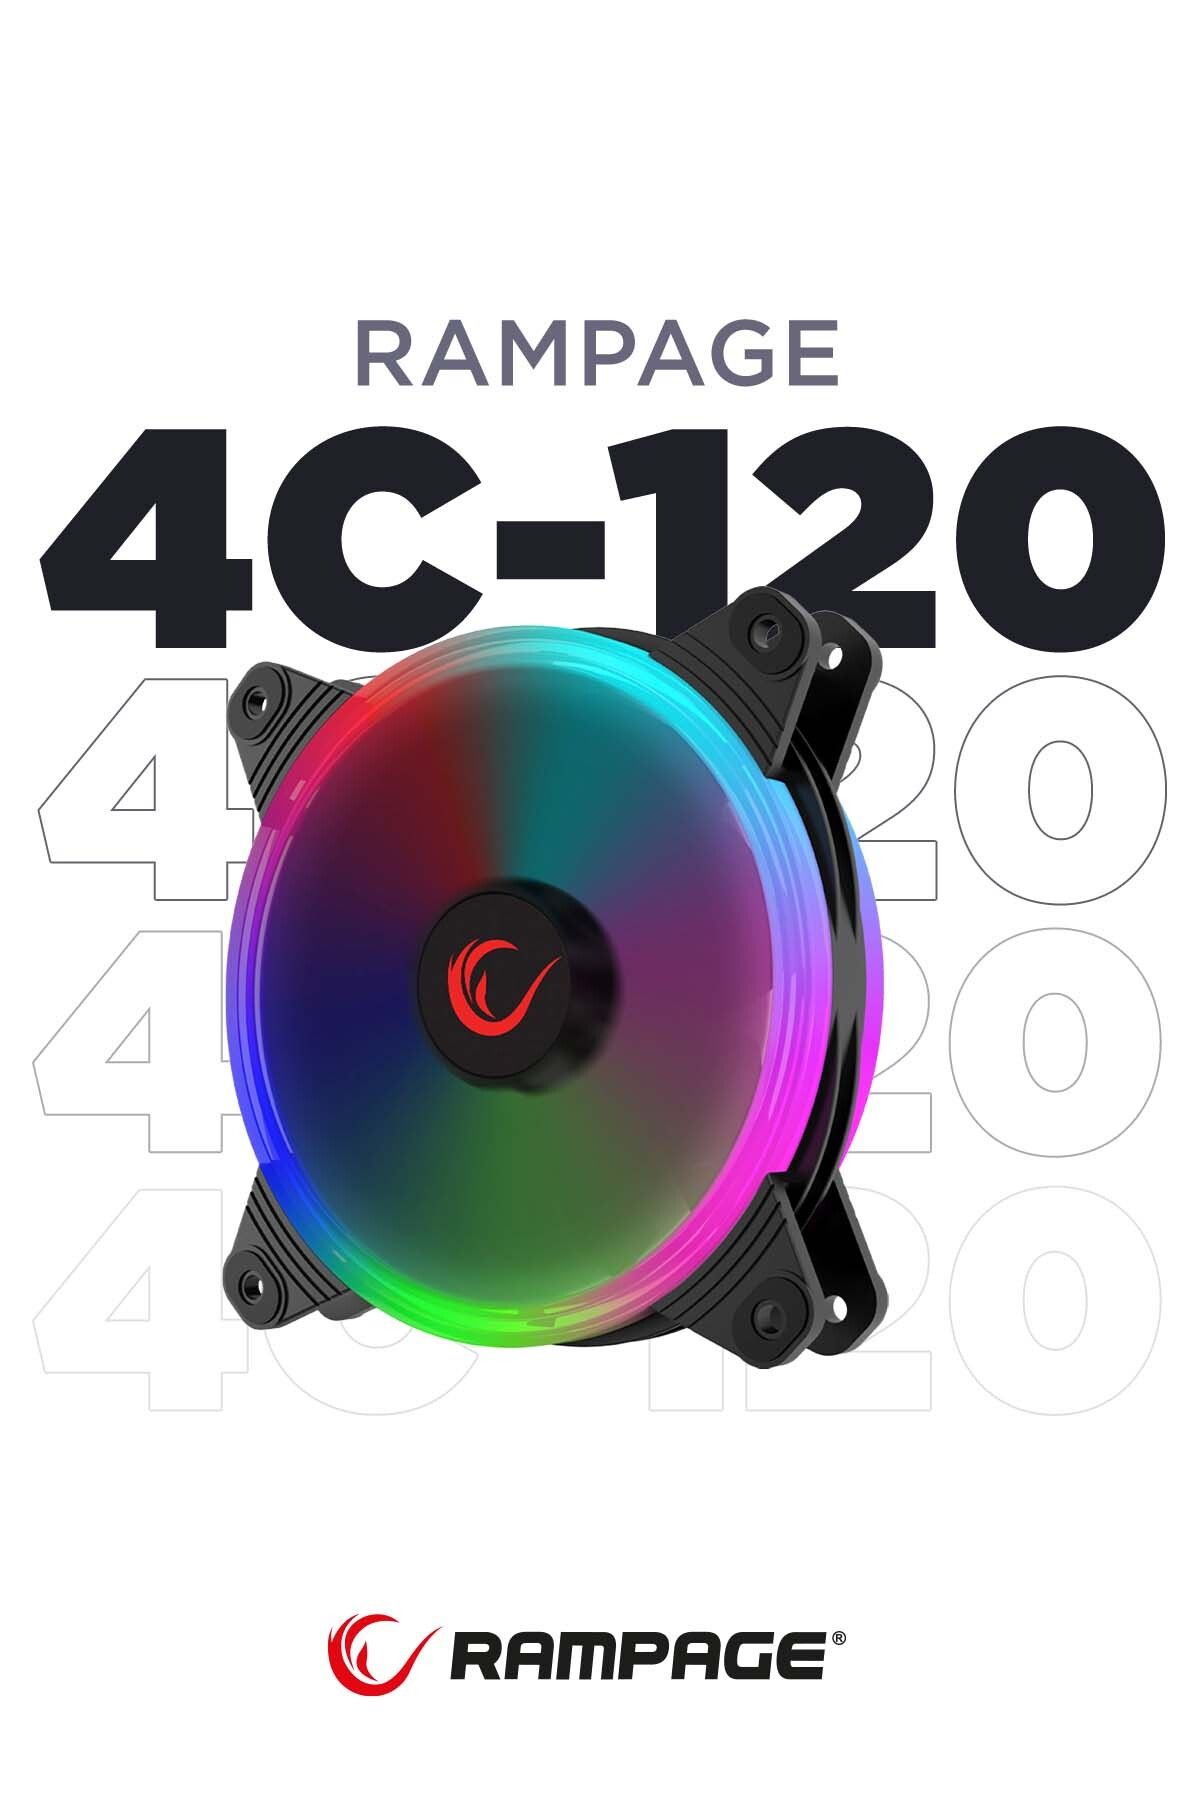 Rampage 4c-120 12cm Double Ring 5 Renk Ledli Gökkuşağı Rainbow Kasa Fanı